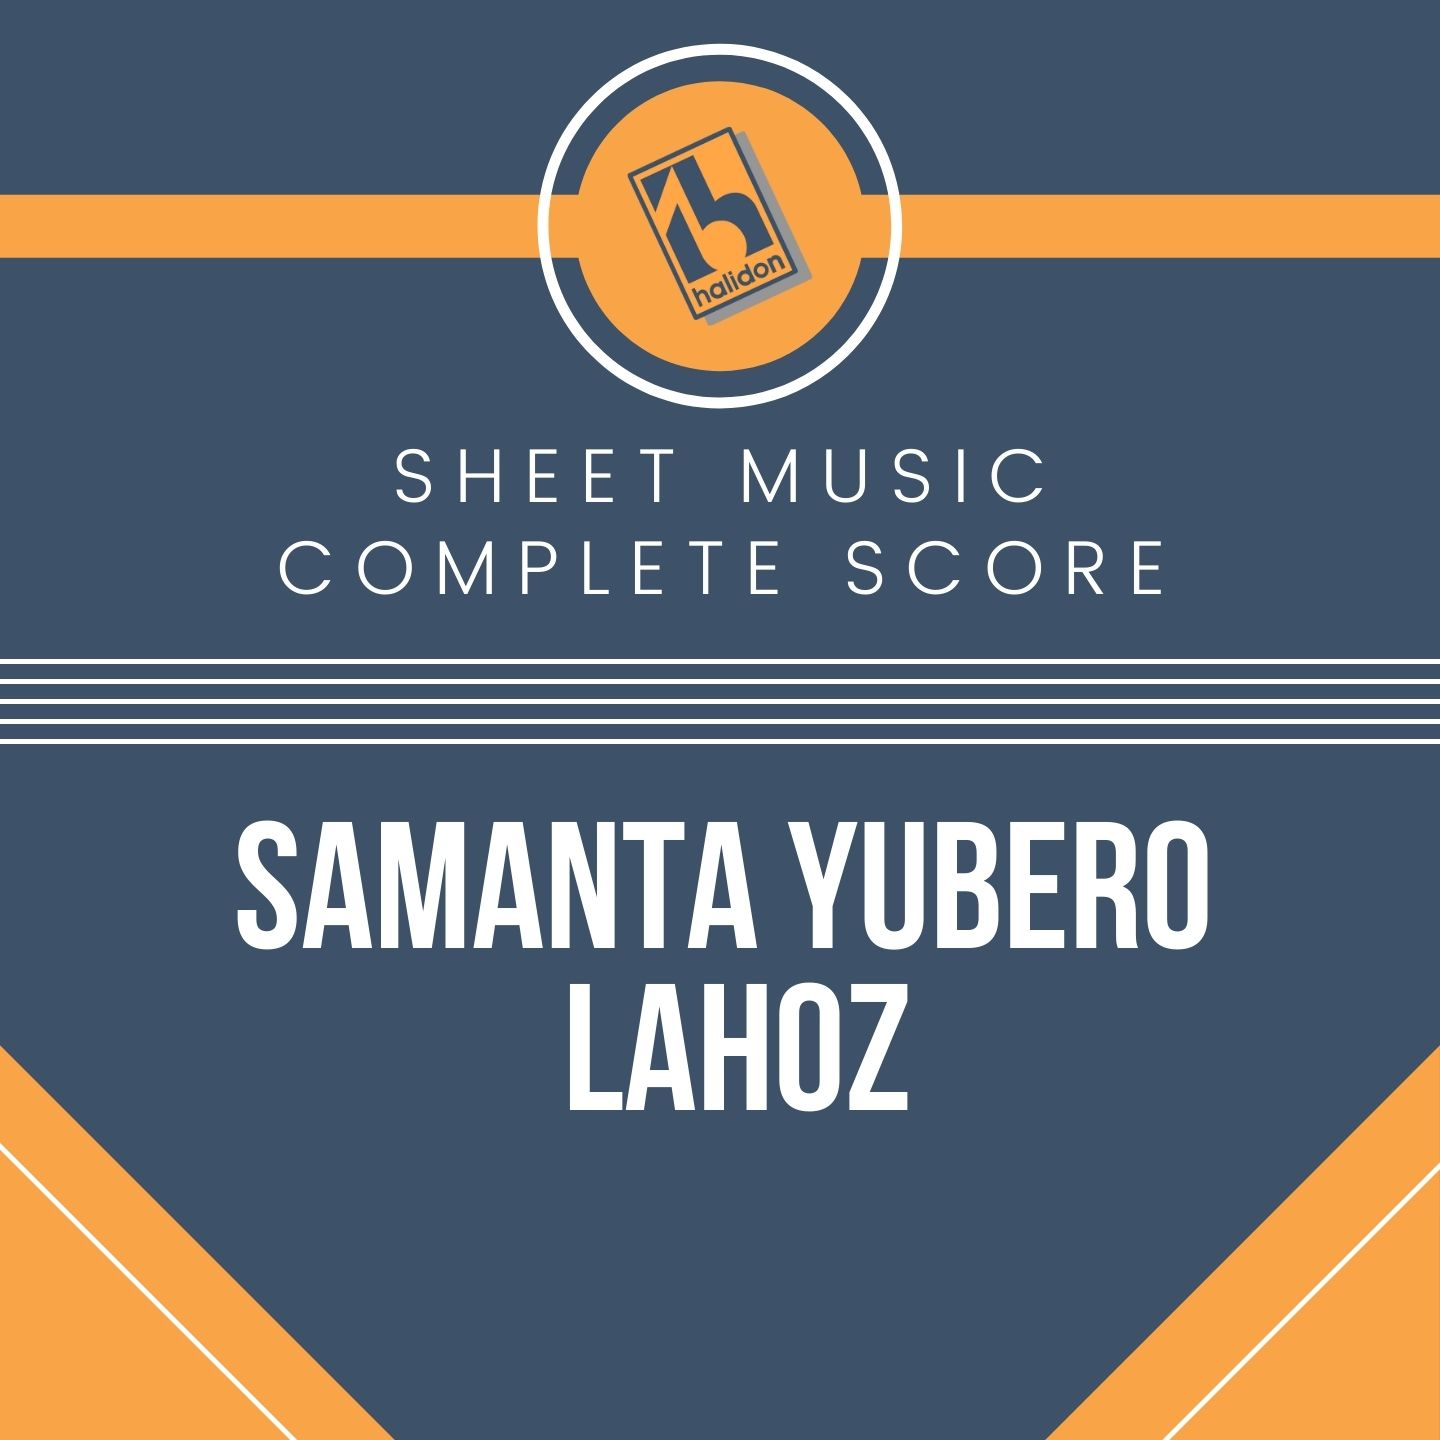 Samanta Yubero Lahoz - Complete Score